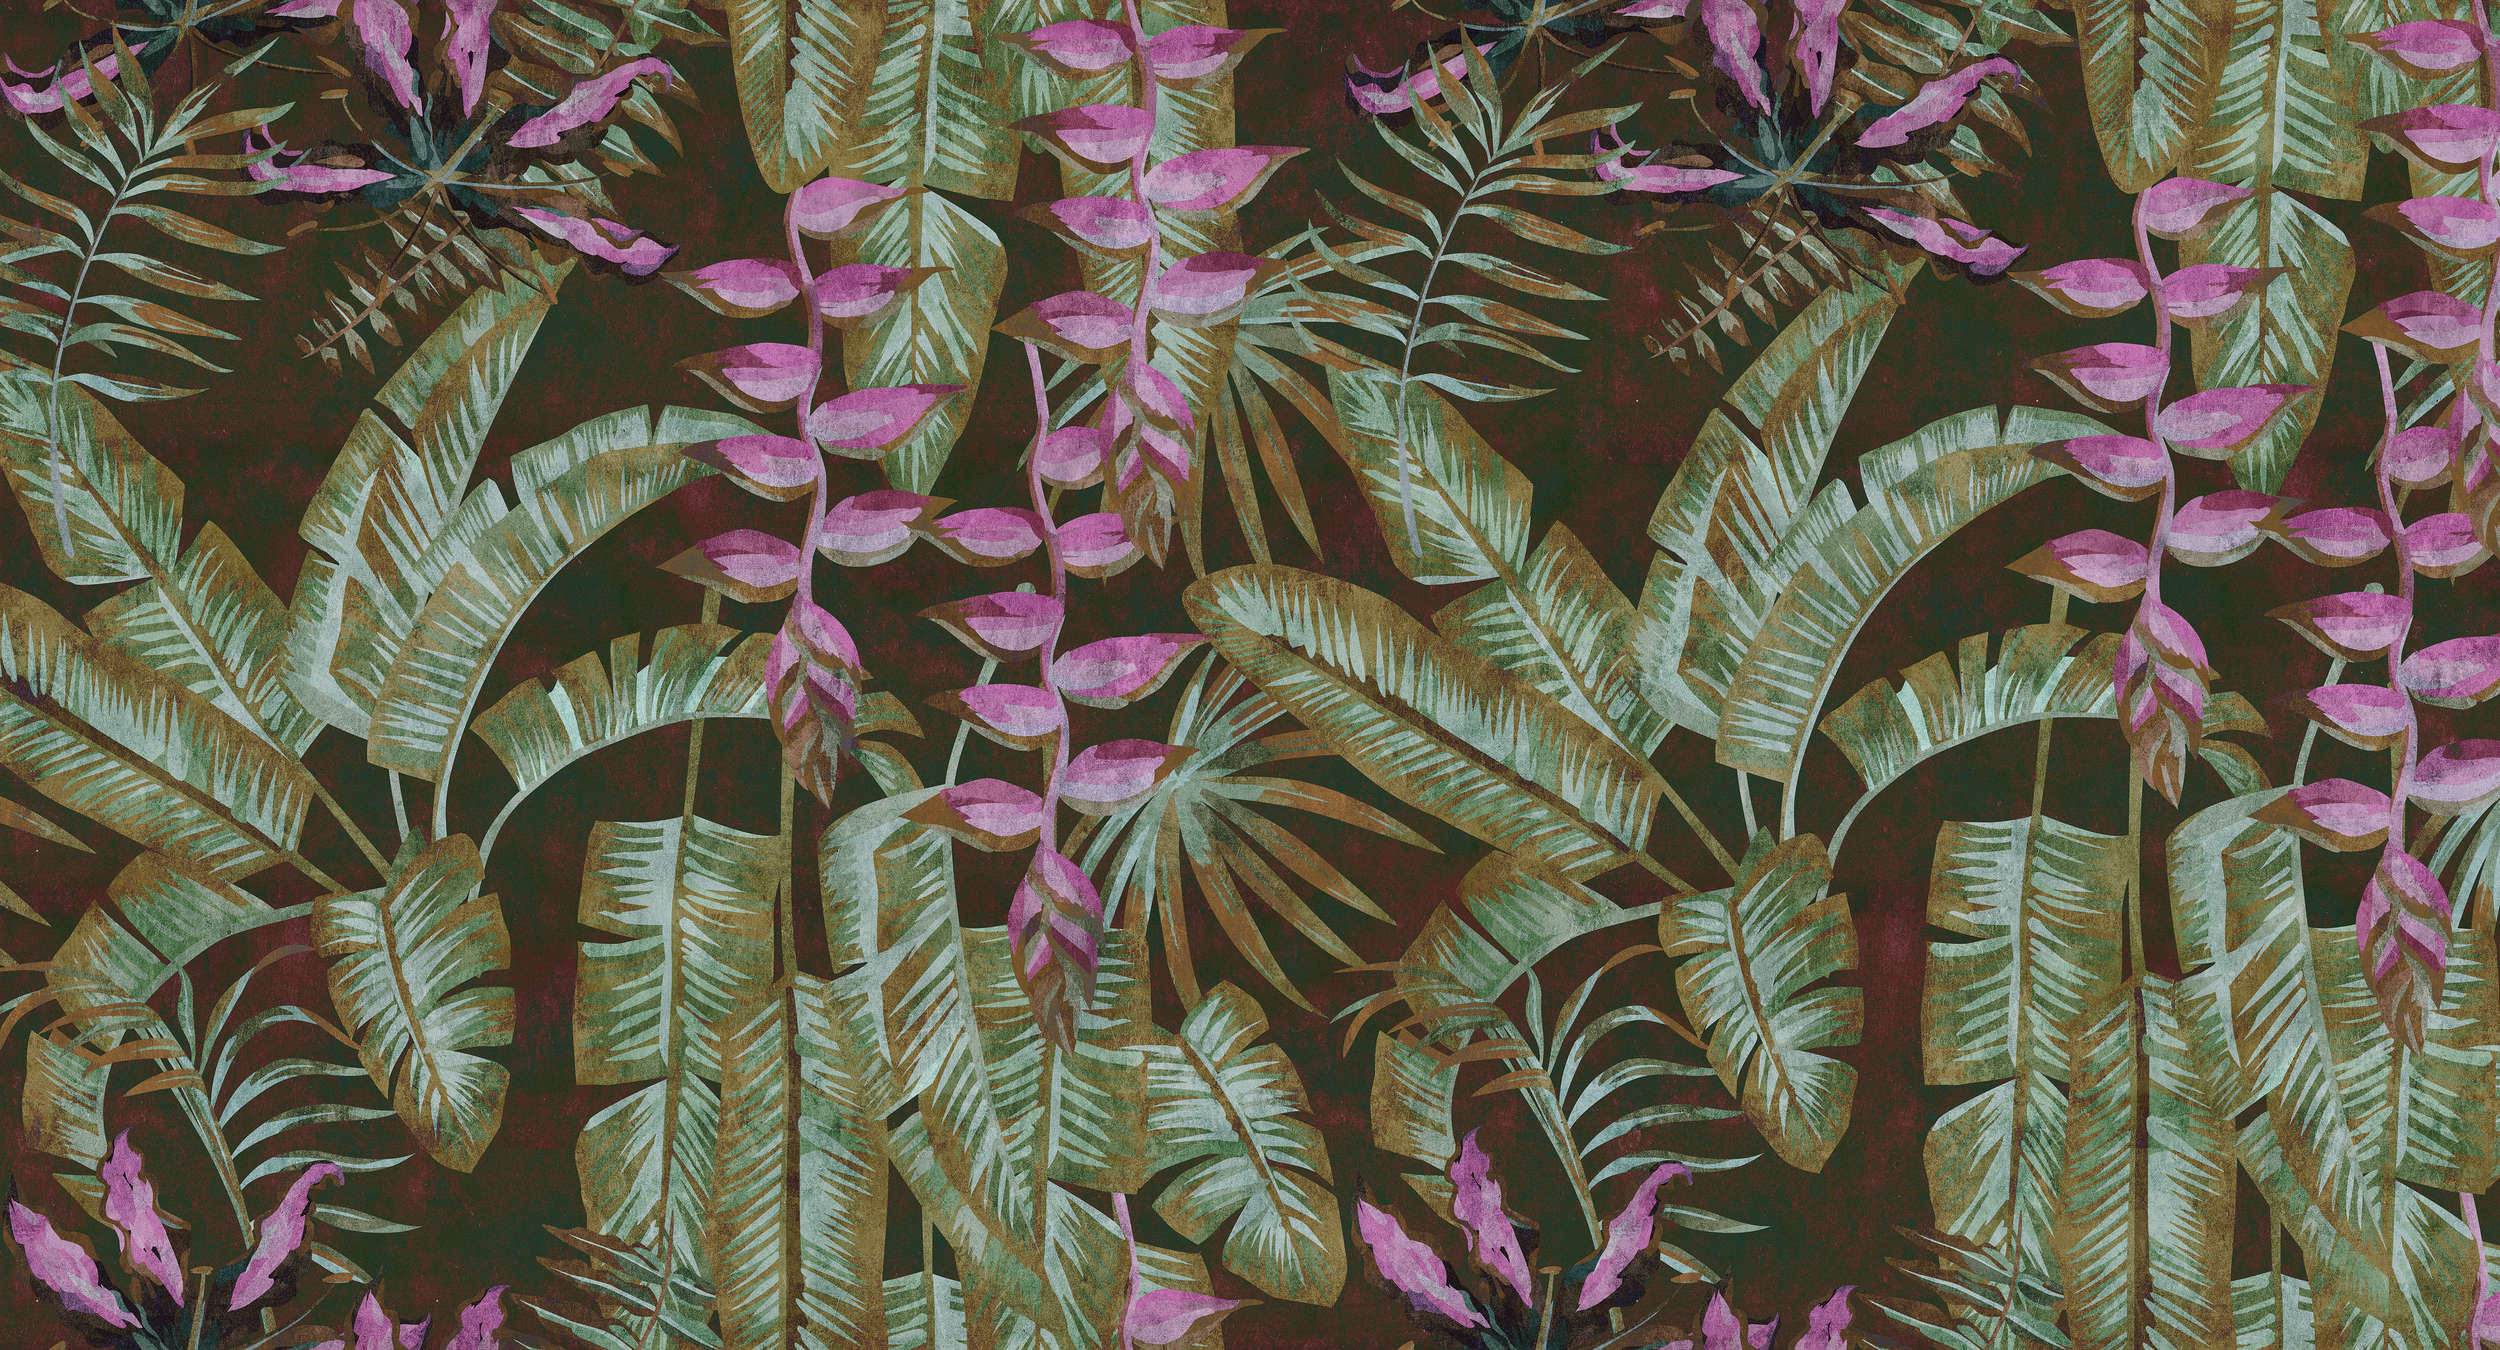             Tropicana 1 - Papier peint jungle avec feuilles de bananier et fougères - Vert, Violet | Intissé lisse mat
        